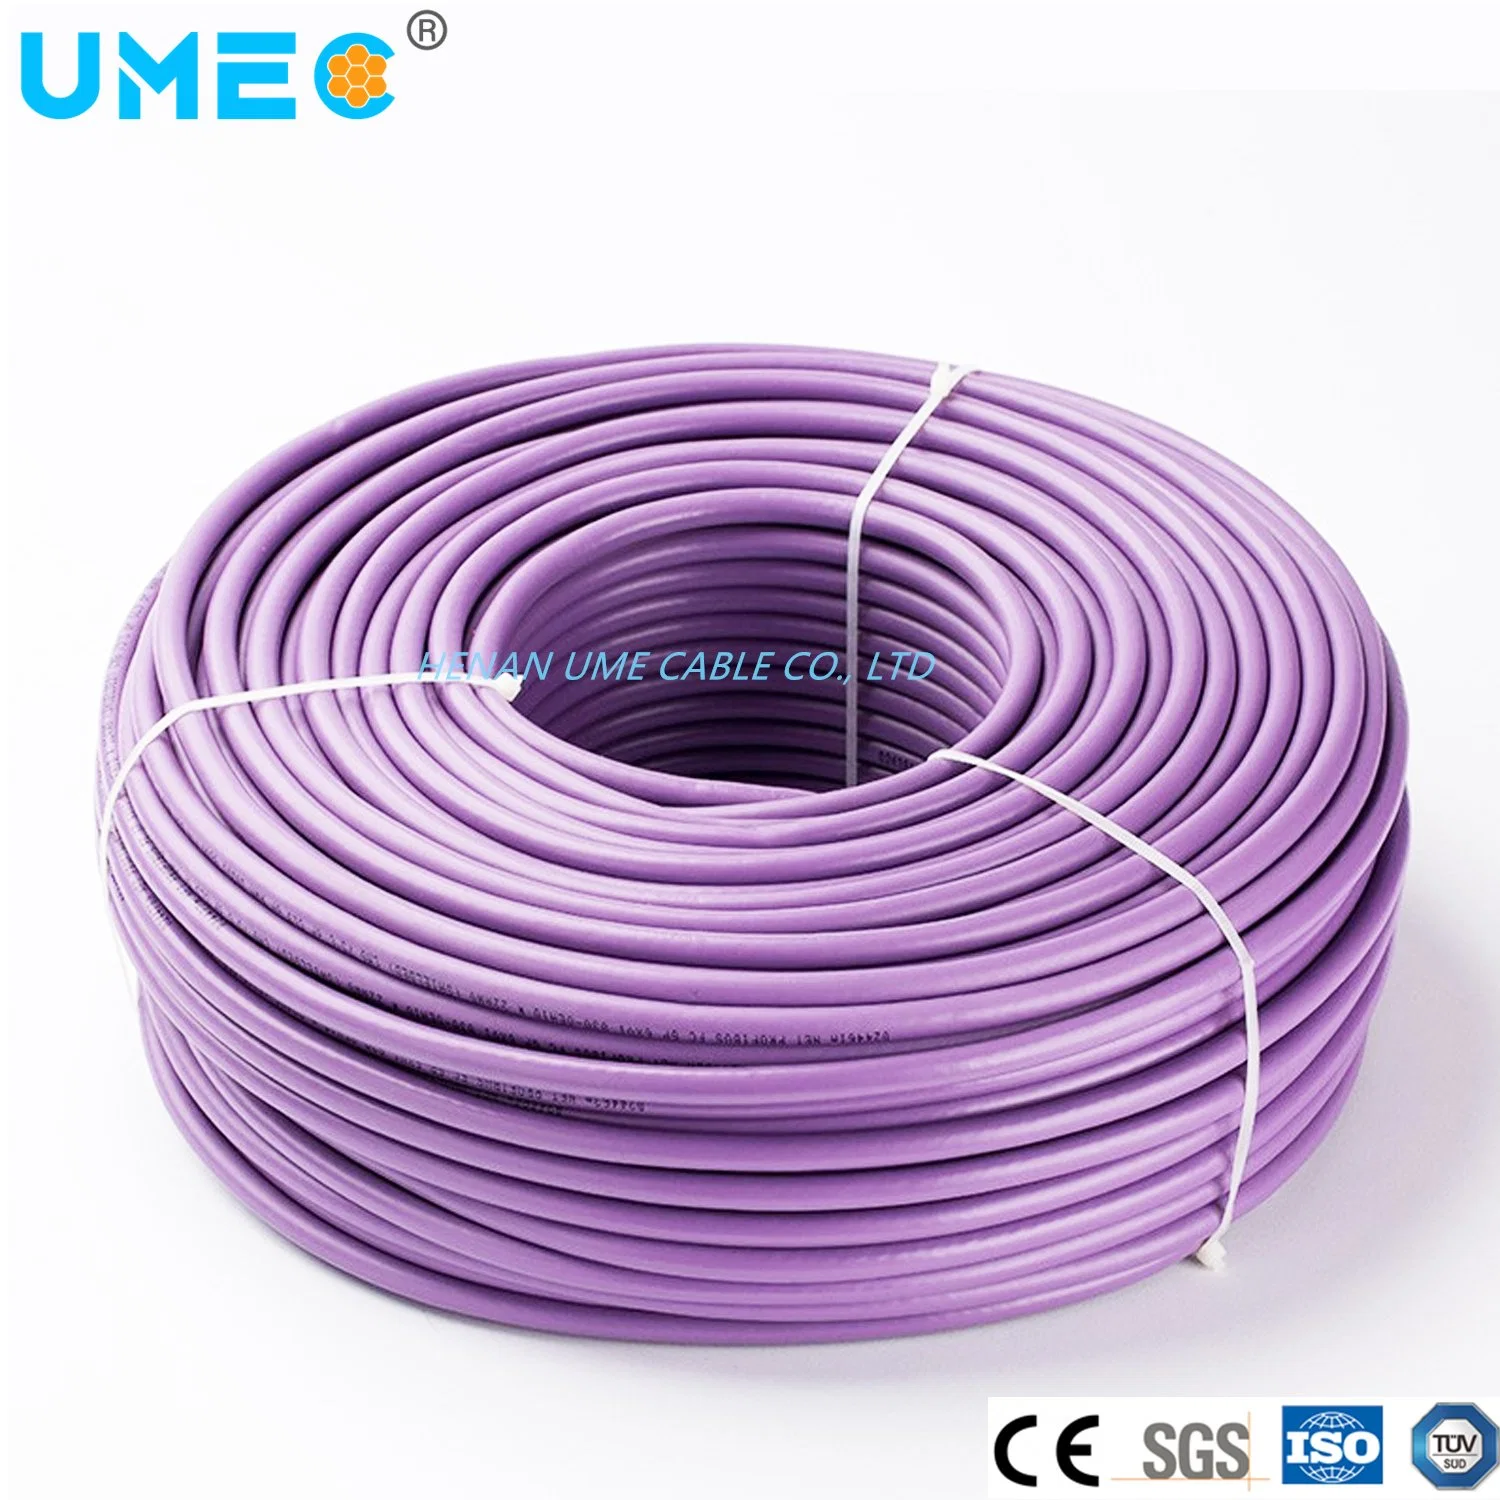 IEC-Standard-Mehrleiterkabel, 2 cx22 AWG Volltemperaturkabel, PE ins Folien- und Geflecht violett 6 x v18300eh10